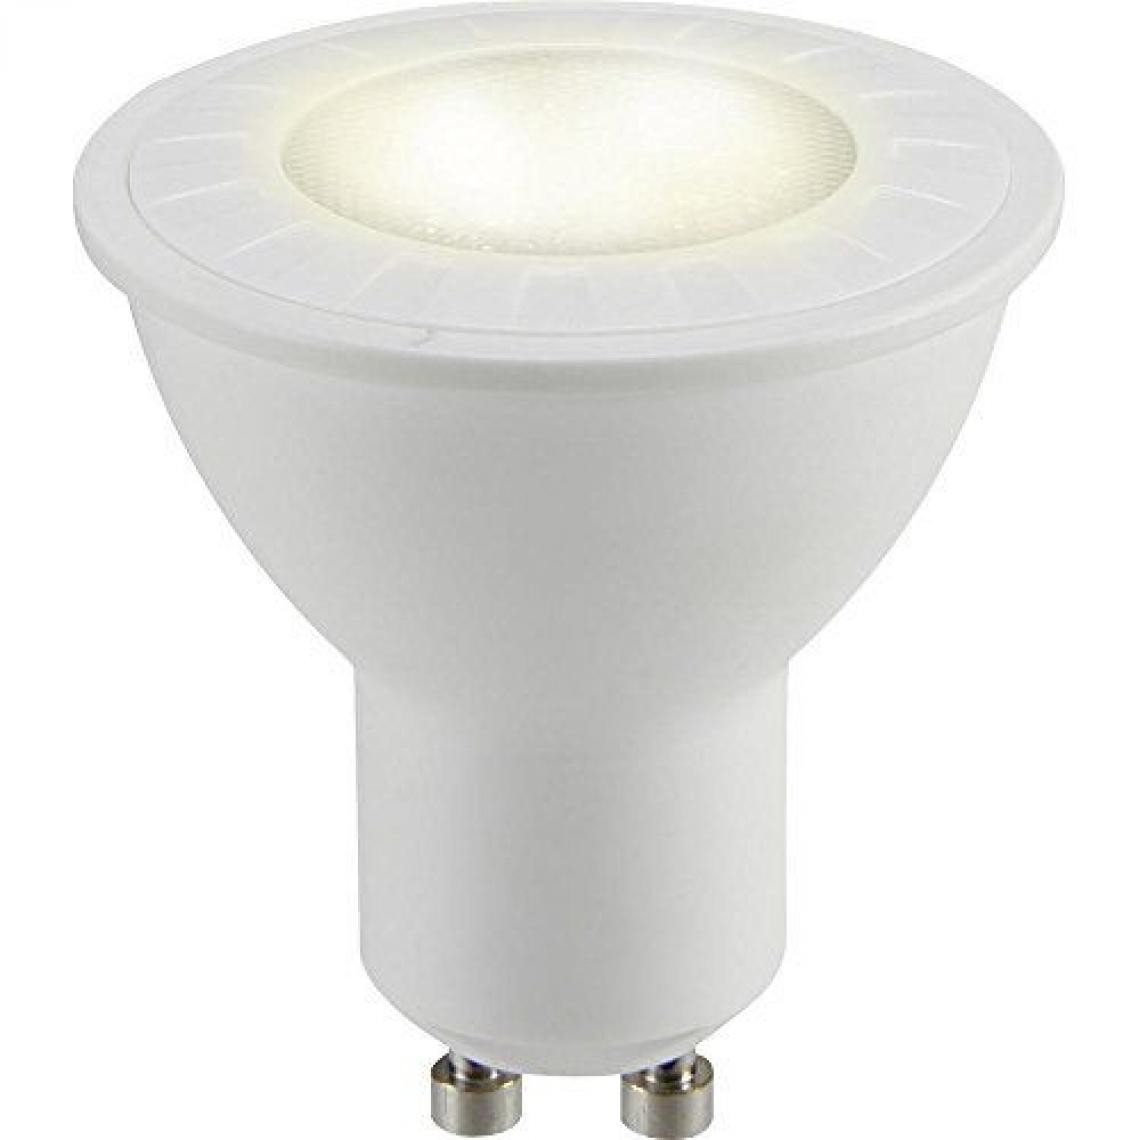 Inconnu - Ampoule LED GU10 Sygonix 1364920 réflecteur 4.8 W = 50 W blanc chaud (Ø x L) 50 mm x 54 mm EEC: classe A+ 1 pc(s) - Ampoules LED